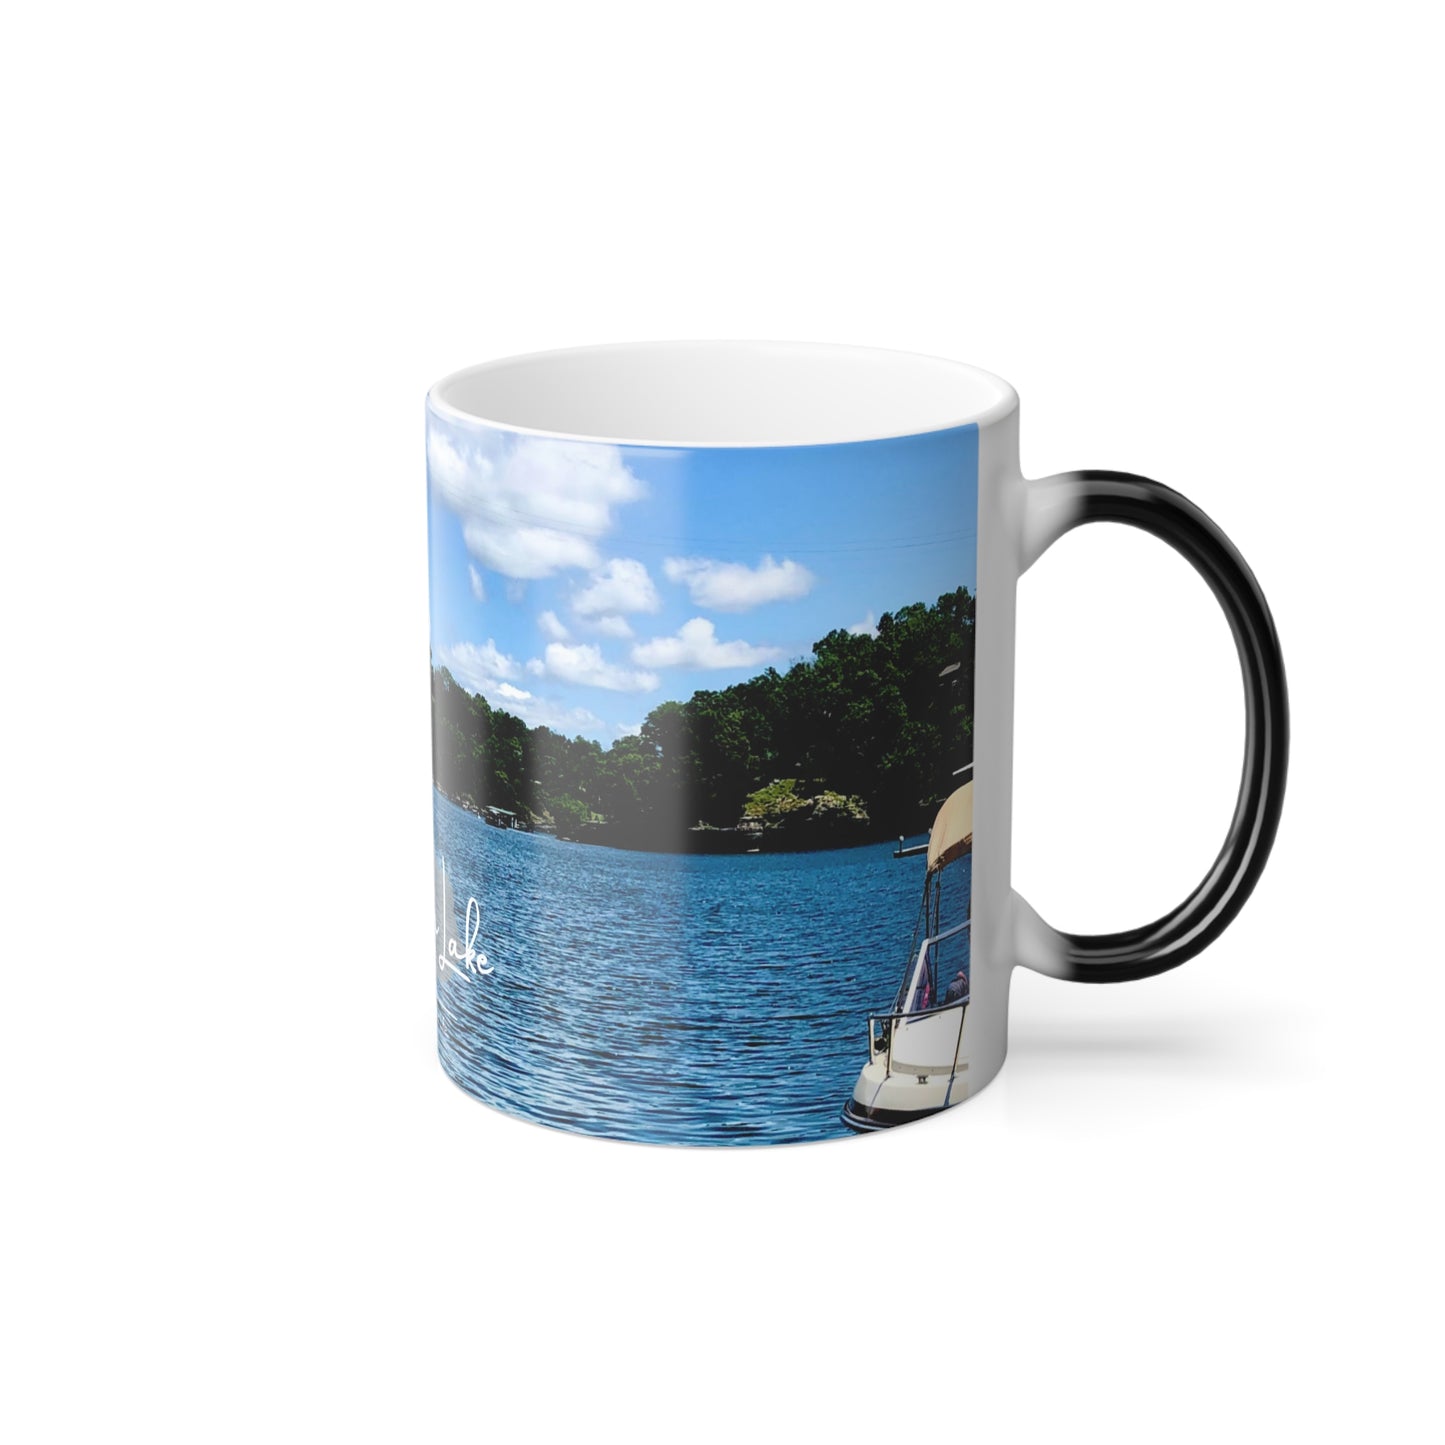 "Welcome to Herrington Lake" Color Morphing Mug, 11oz